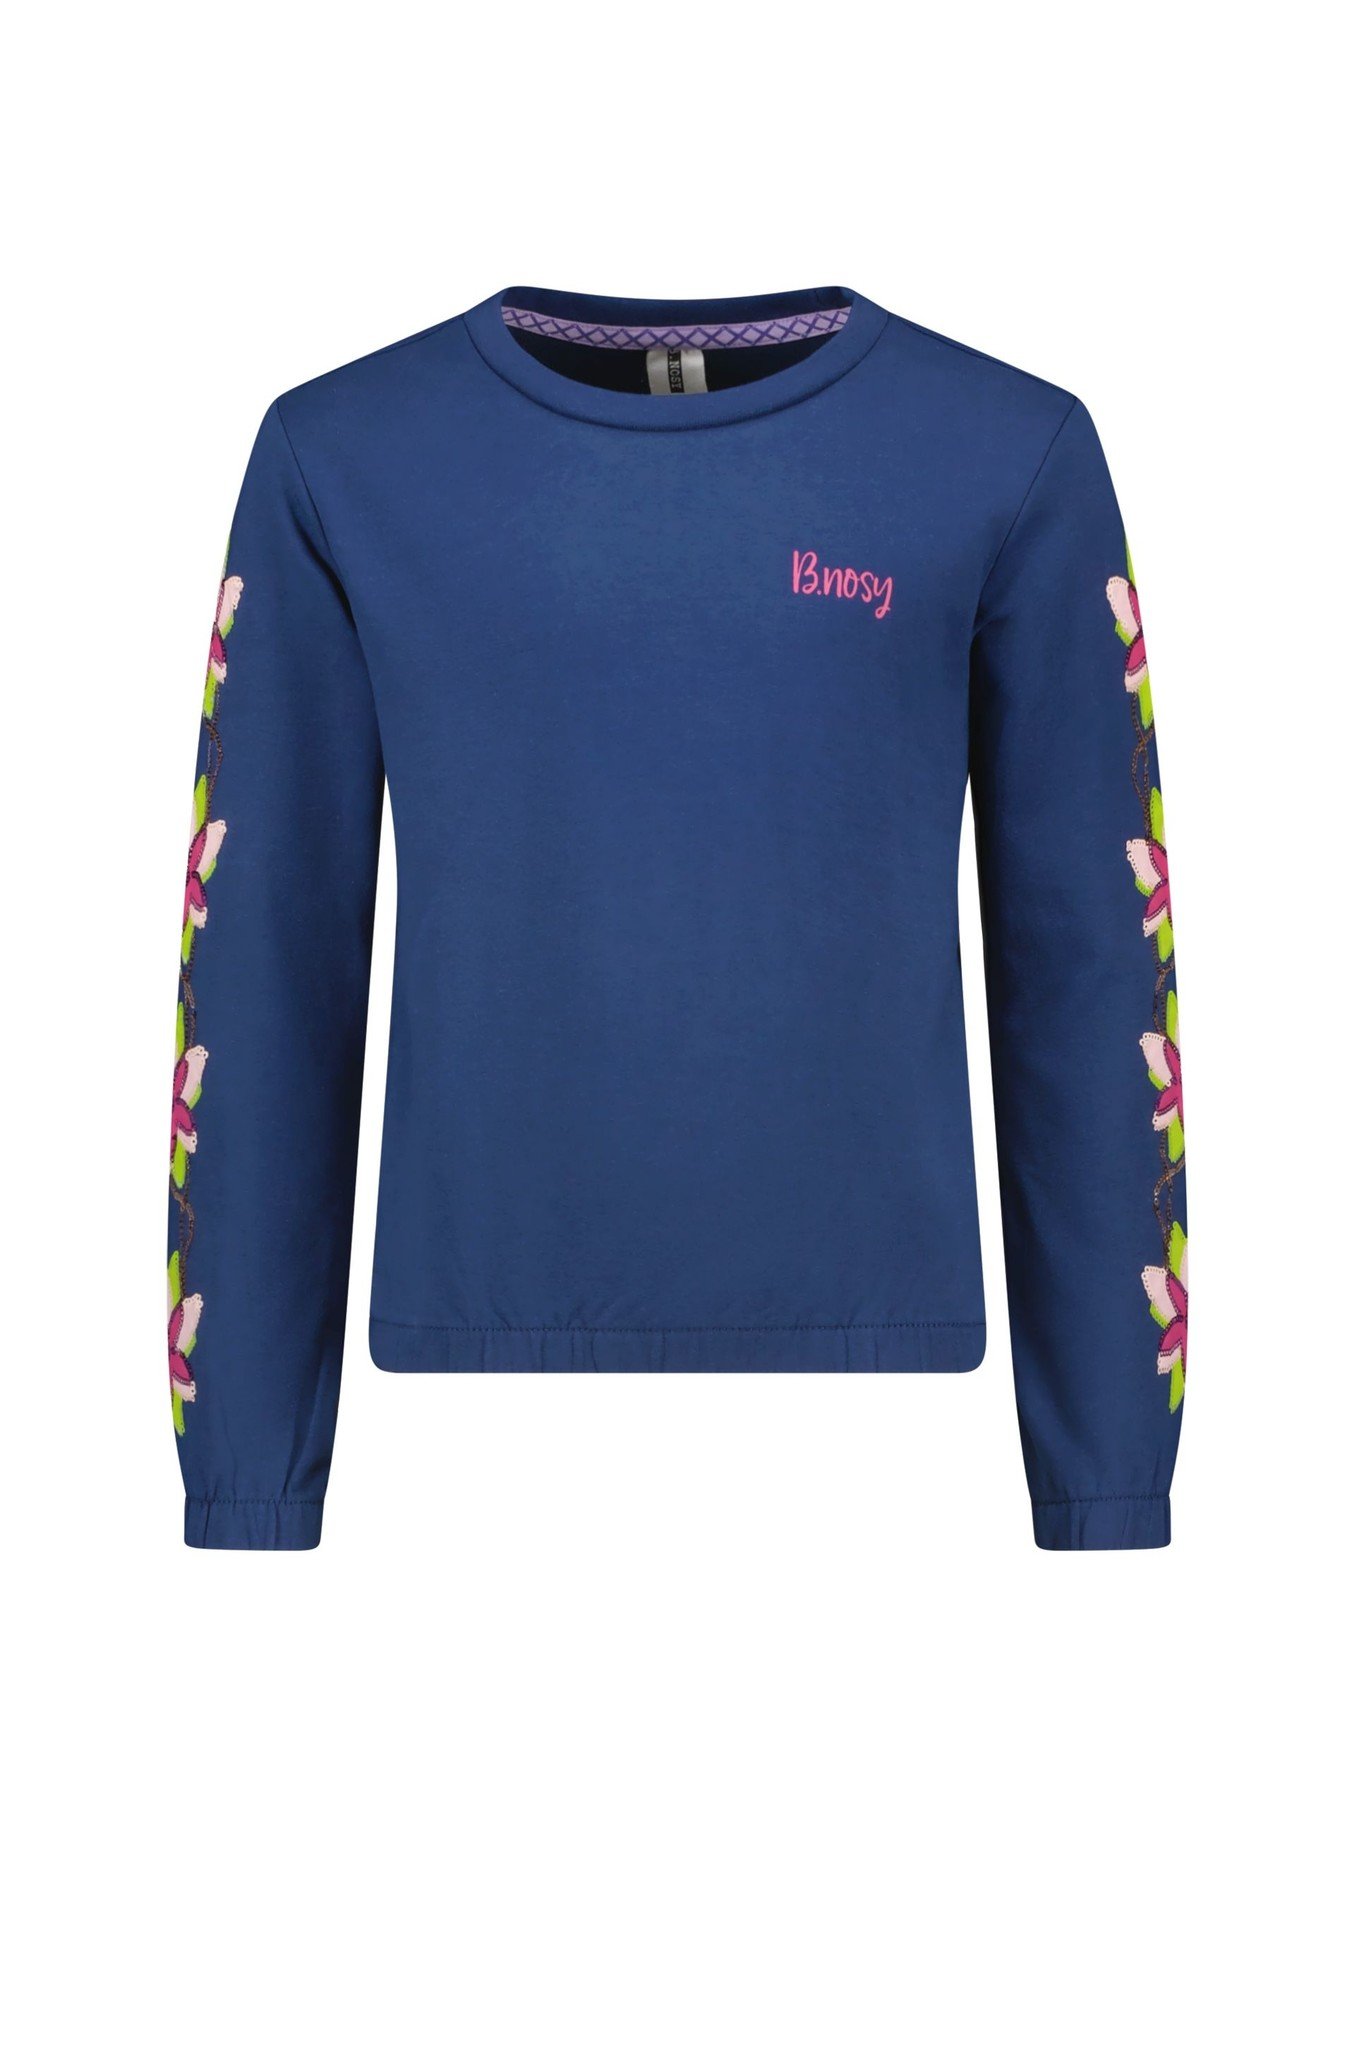 B. Nosy Y212-5304 Meisjes Sweater - Maat 122/128